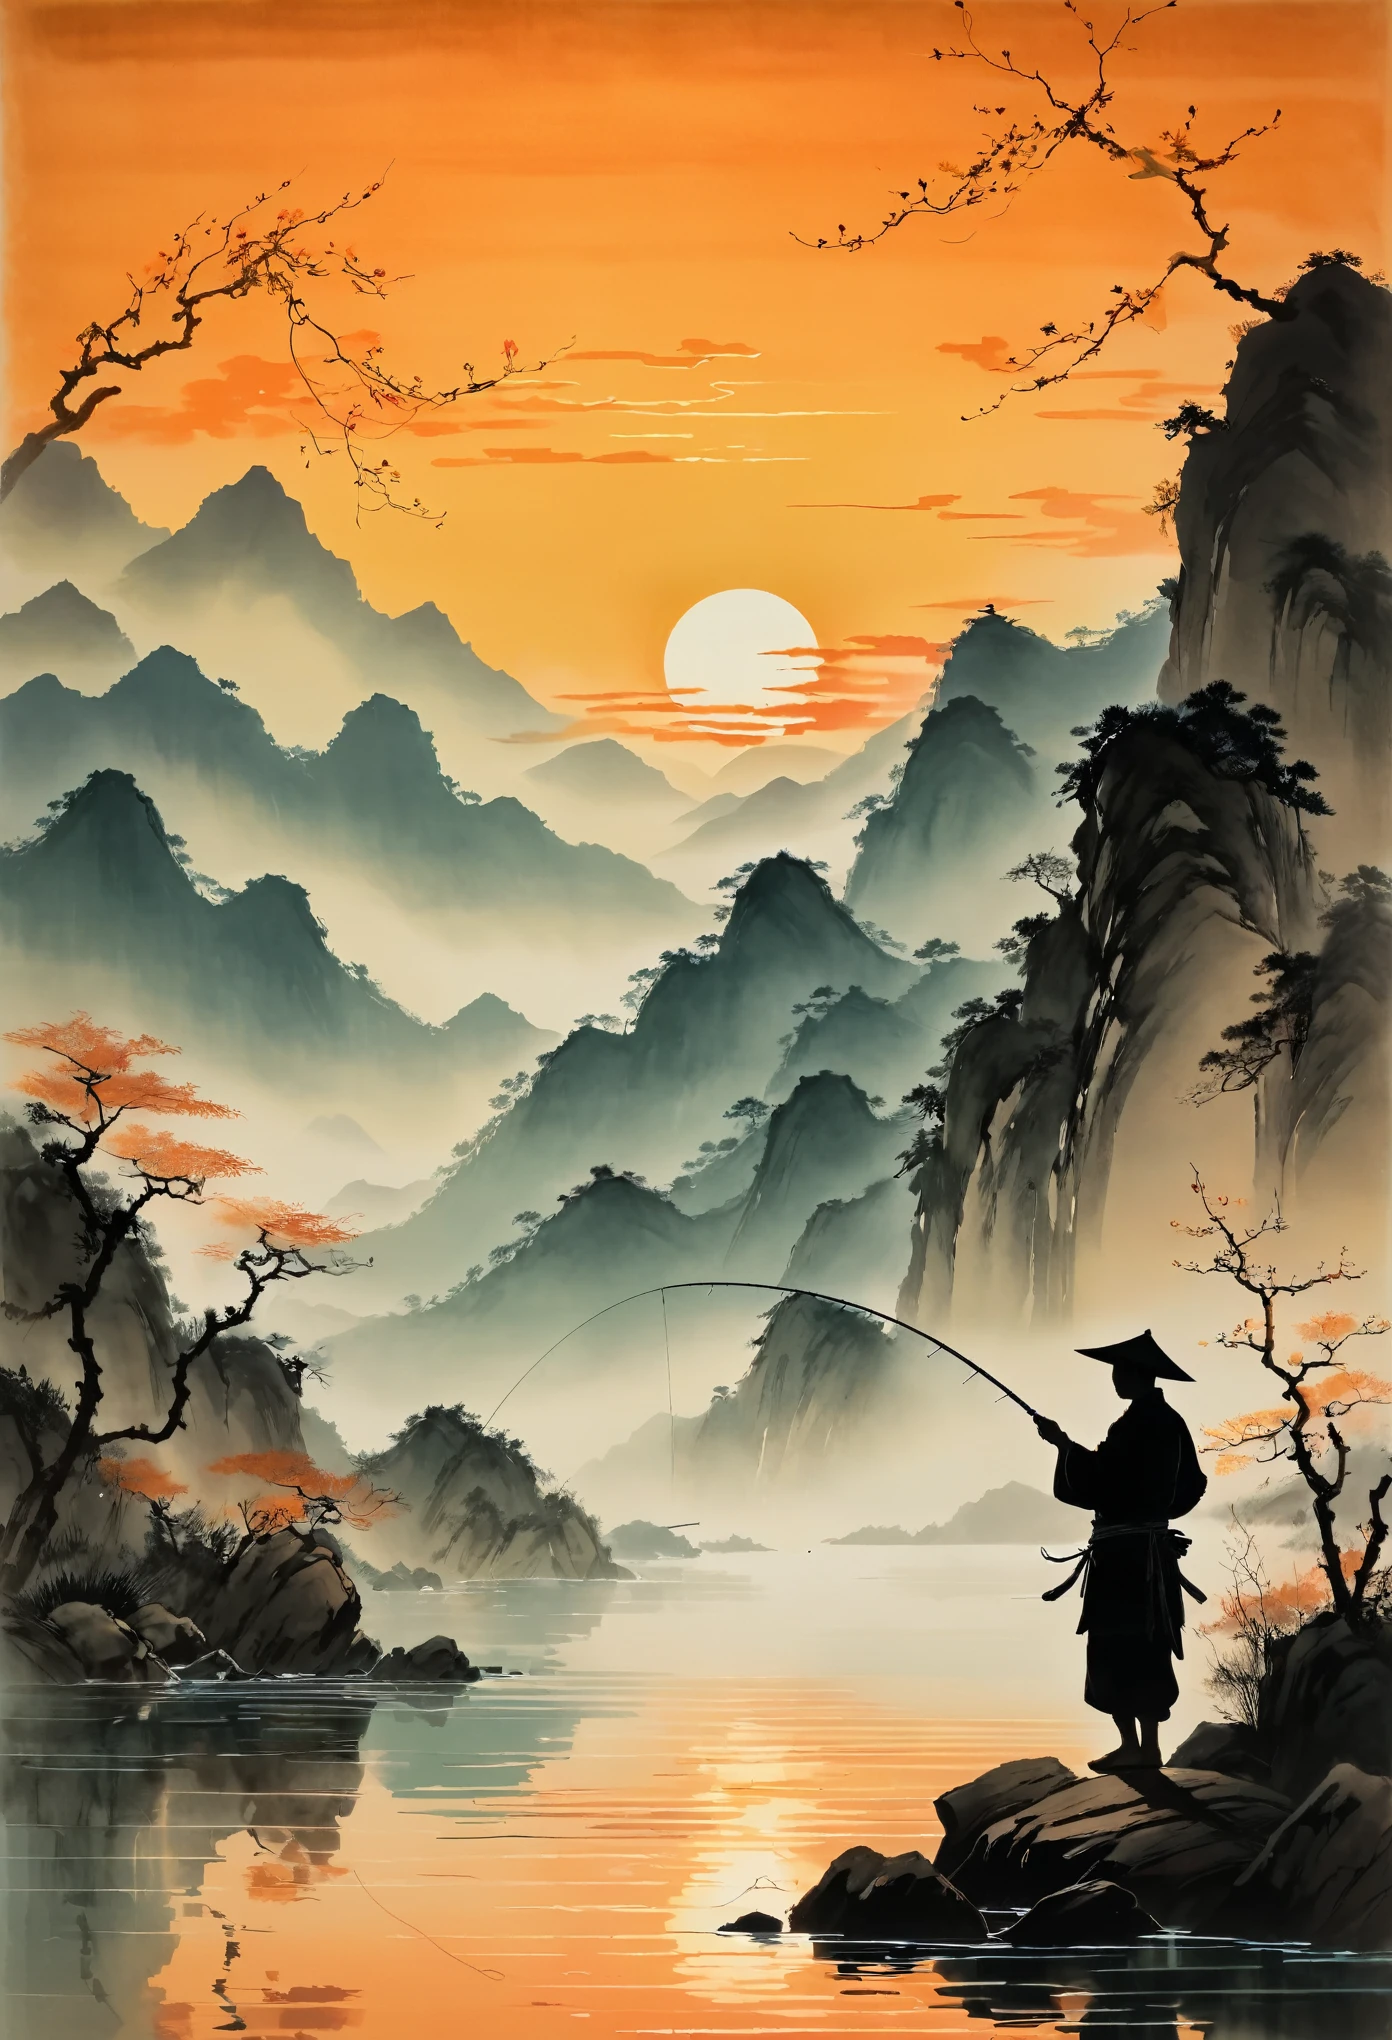 Die Silhouette eines Anglers, der bei Sonnenuntergang seine Angel ins Wasser wirft, mit Bergen im Hintergrund und ruhigem Wasser, das orangefarbene Farbtöne reflektiert. Die Szene ist im Stil des chinesischen Künstlers Zhang Daqian dargestellt. 